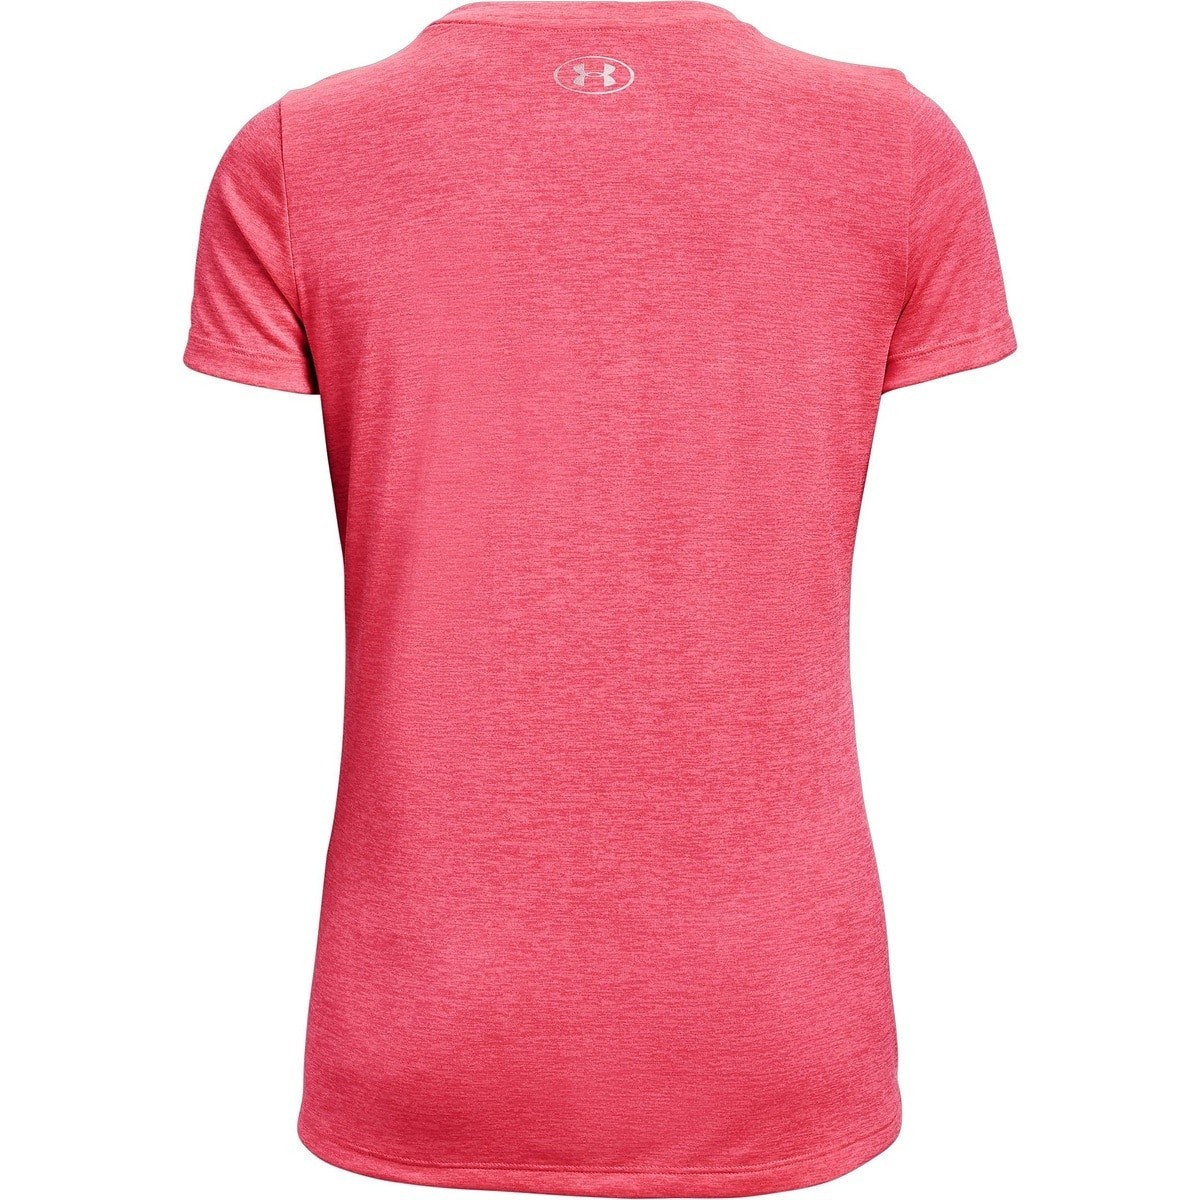 アンダーアーマー トレーニング Tシャツ UNDER ARMOUR レディース ピンク ジム ランニング